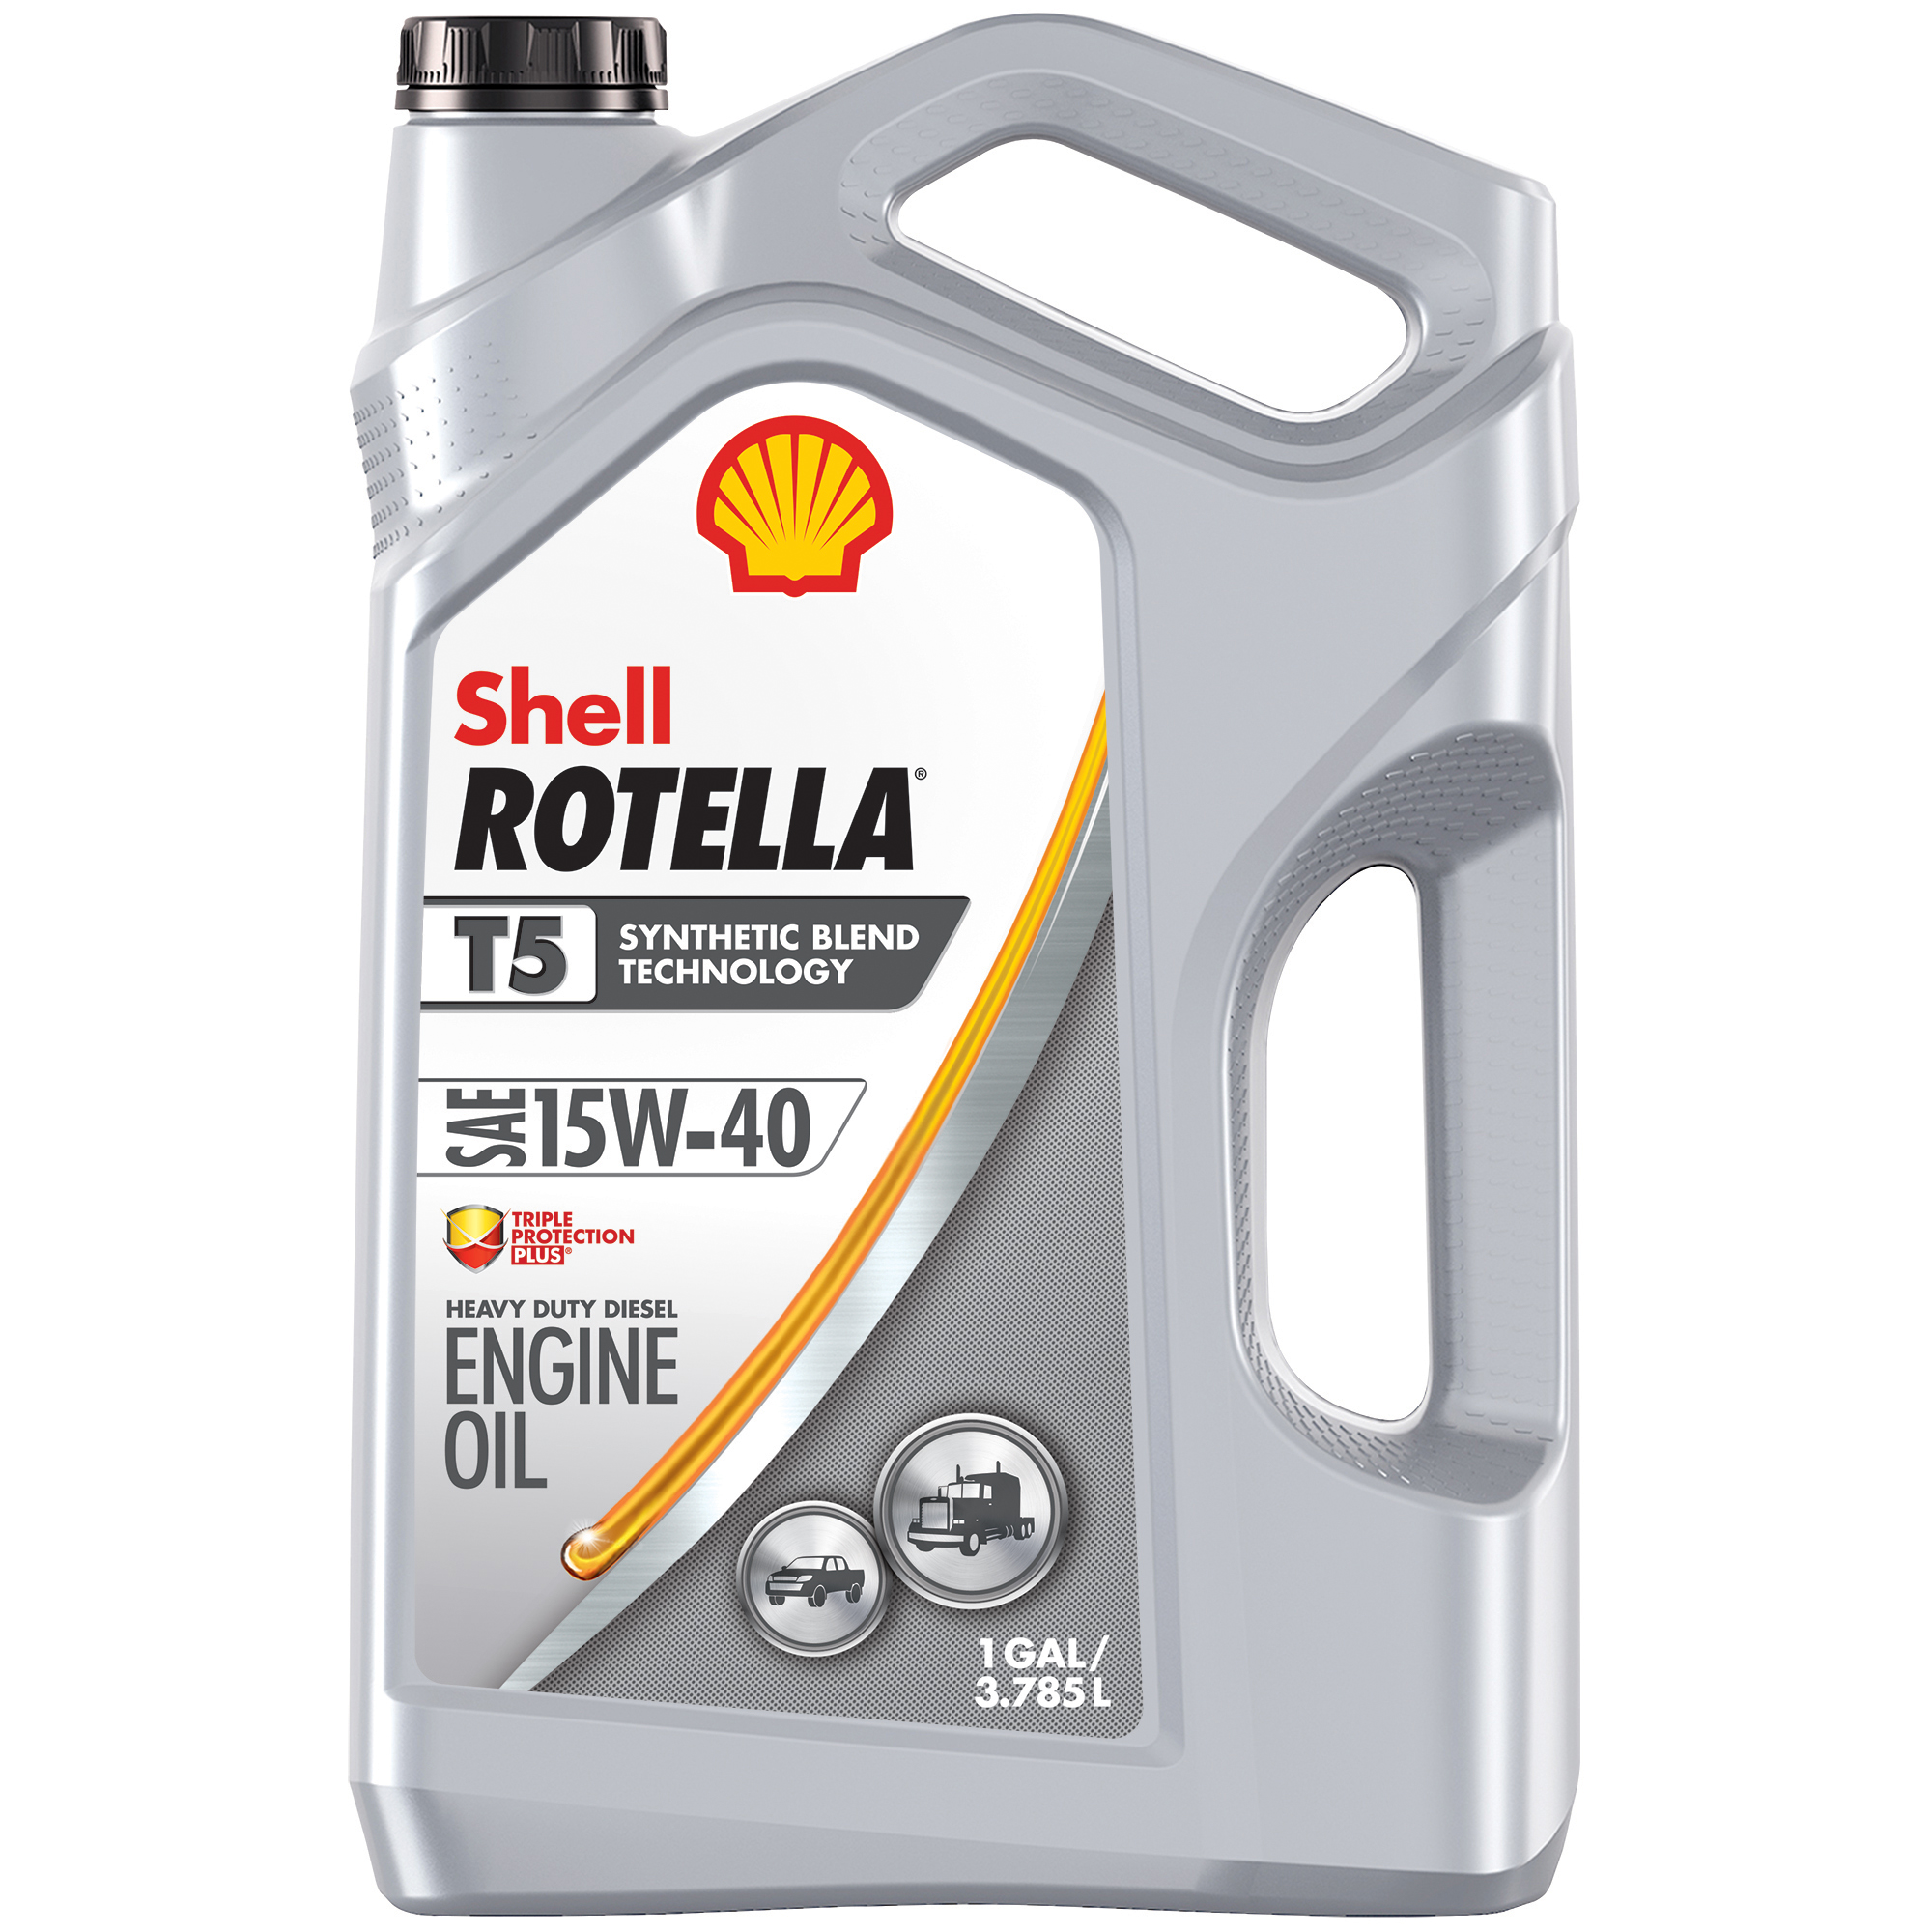 壳牌Rotella T5合成混合柴油发动机油